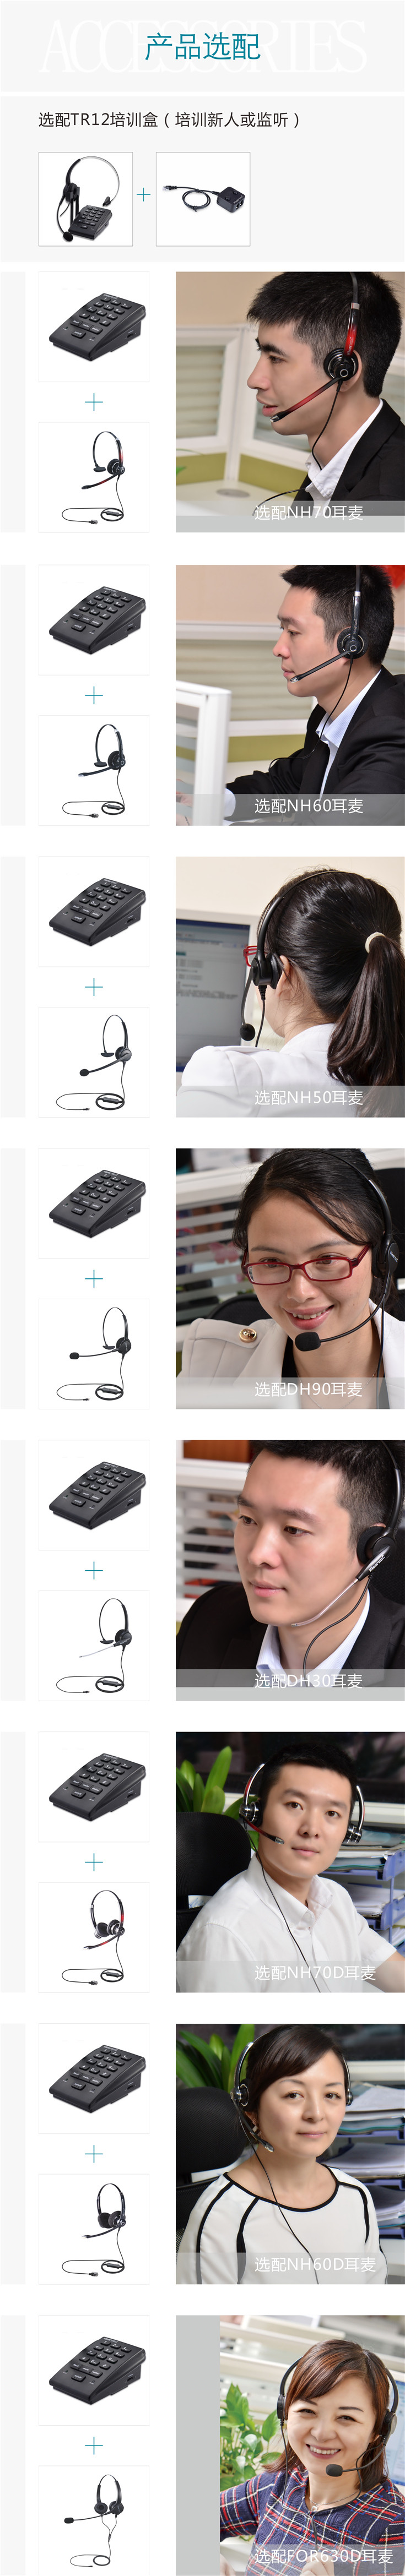 北恩U800呼叫中心录音电话耳机 来电弹屏 客户管理软件 话务耳机电话